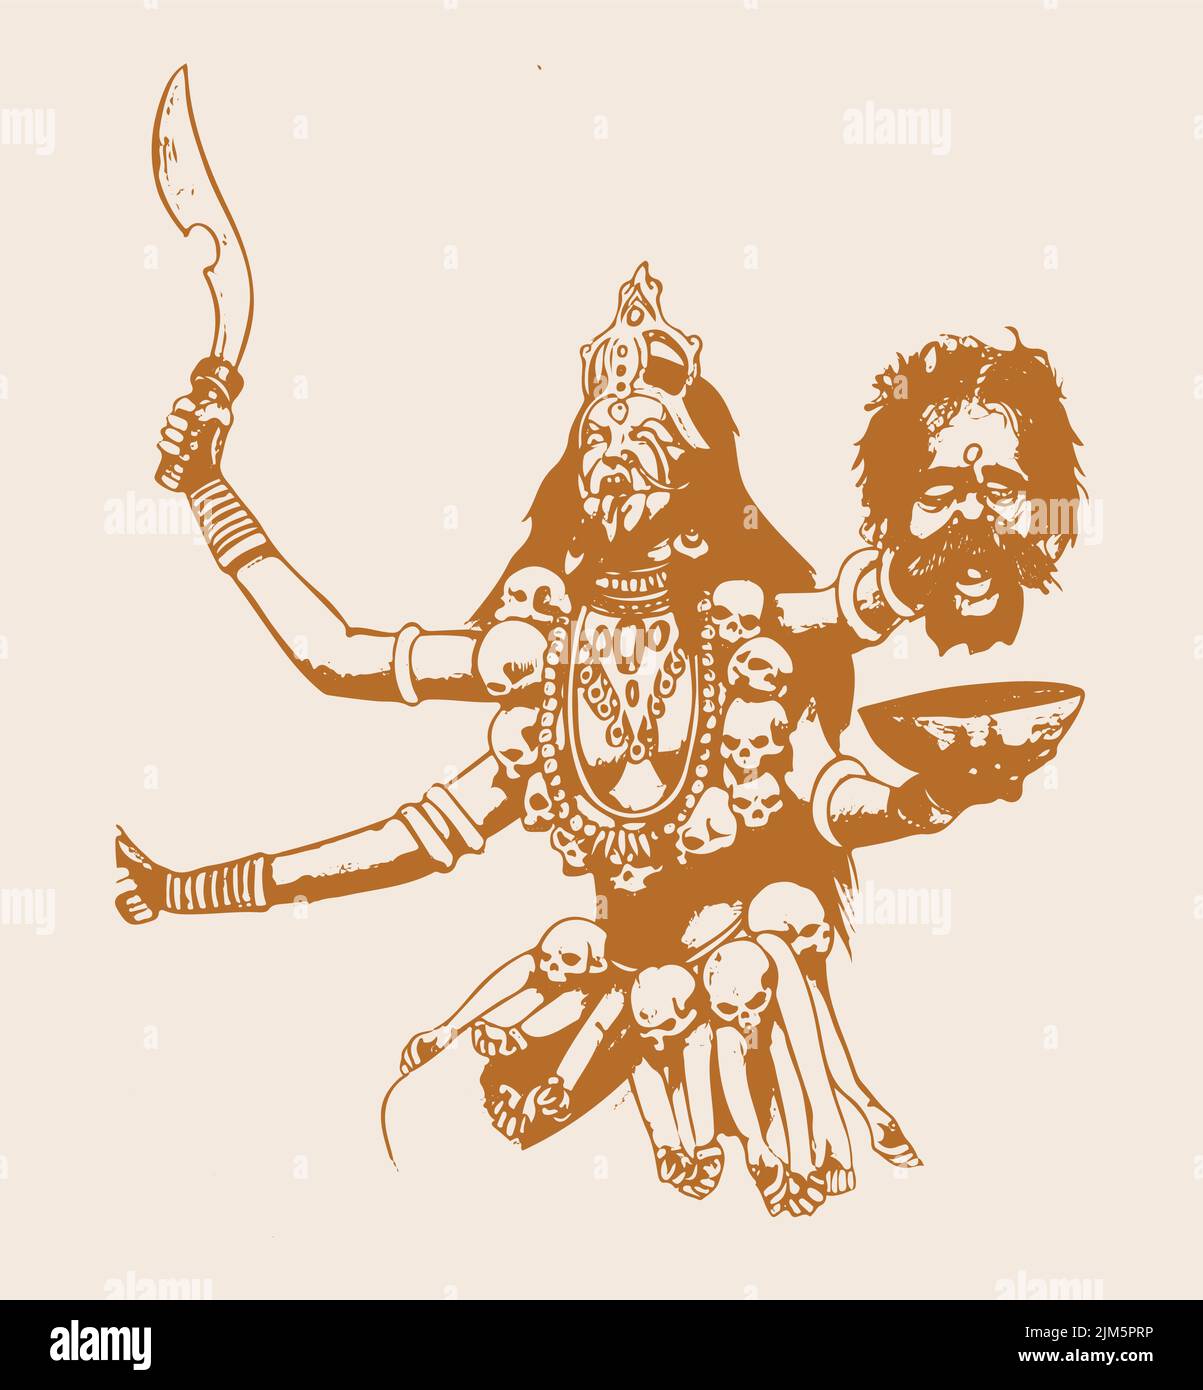 Une illustration de la déesse kali de la religion indienne sur fond orange Illustration de Vecteur